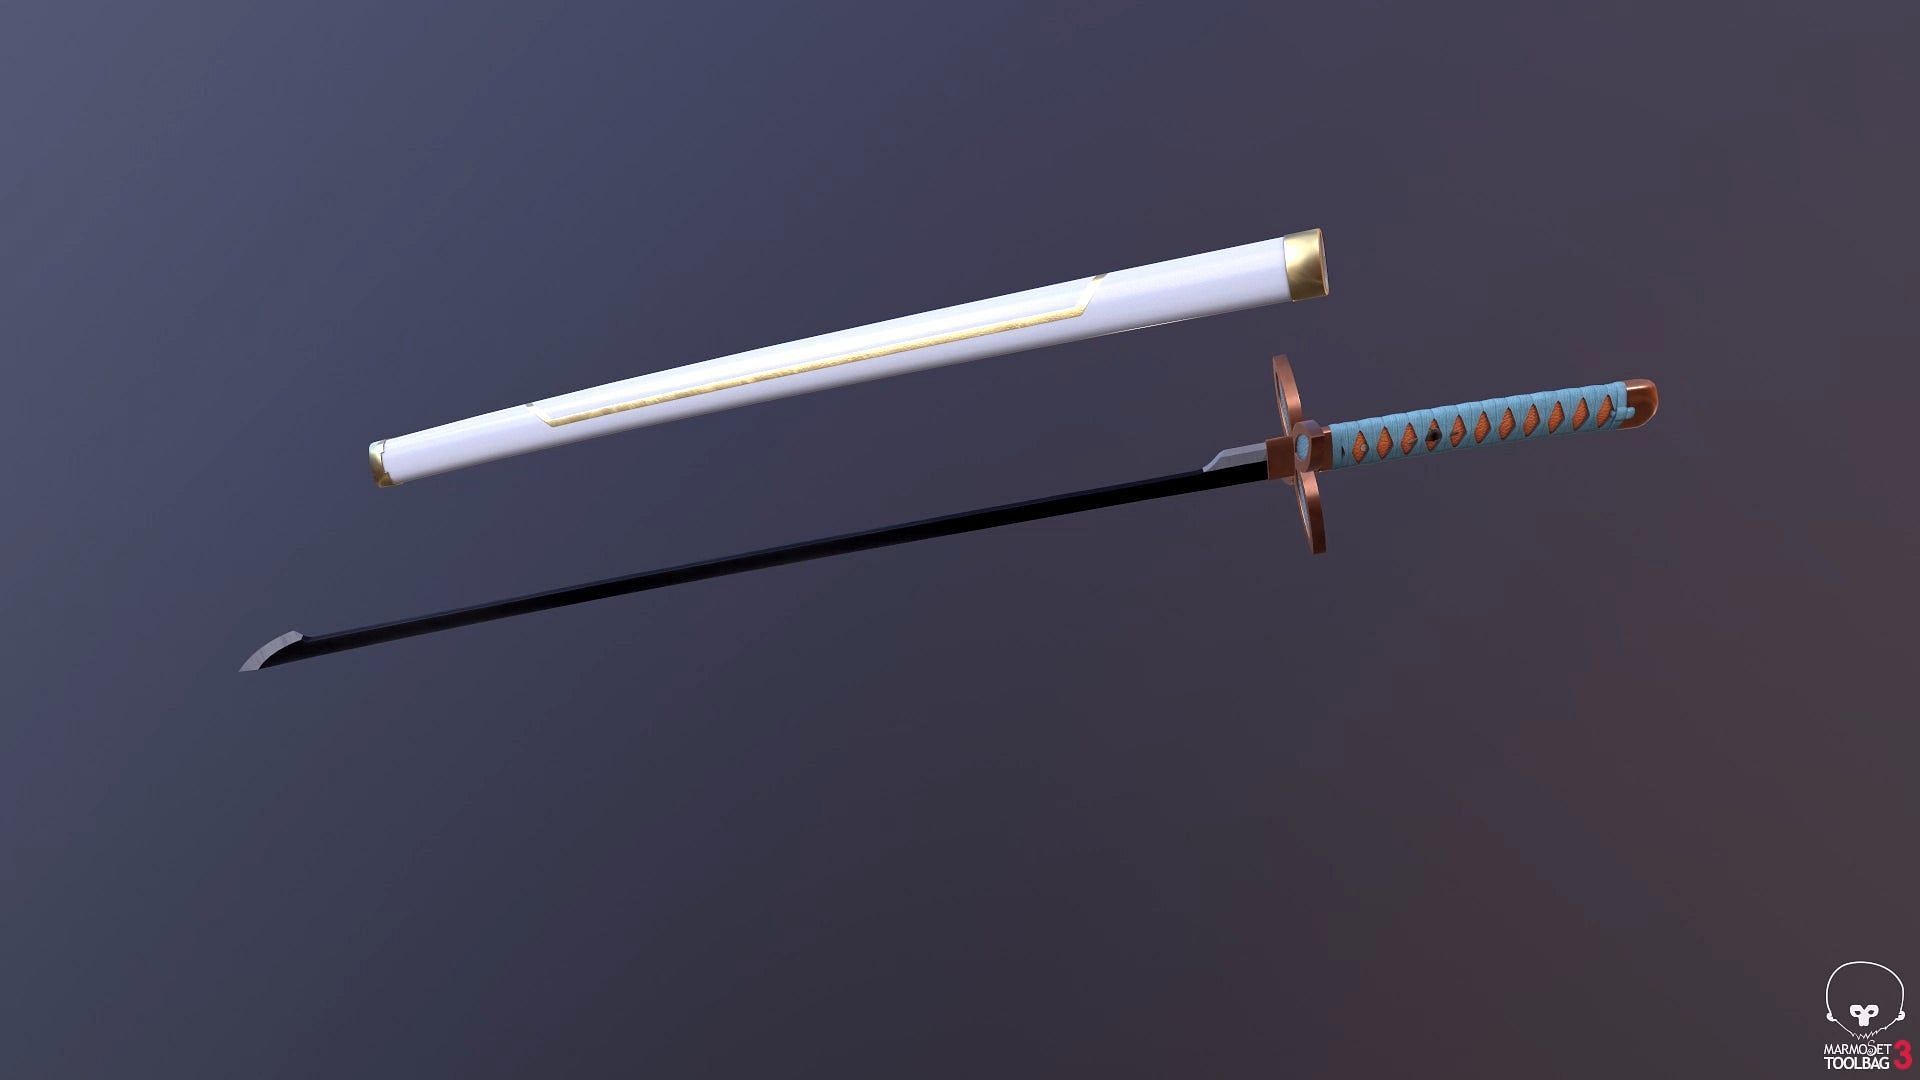 Shinobu&#039;s Sword (Image via r/blender/Reddit)